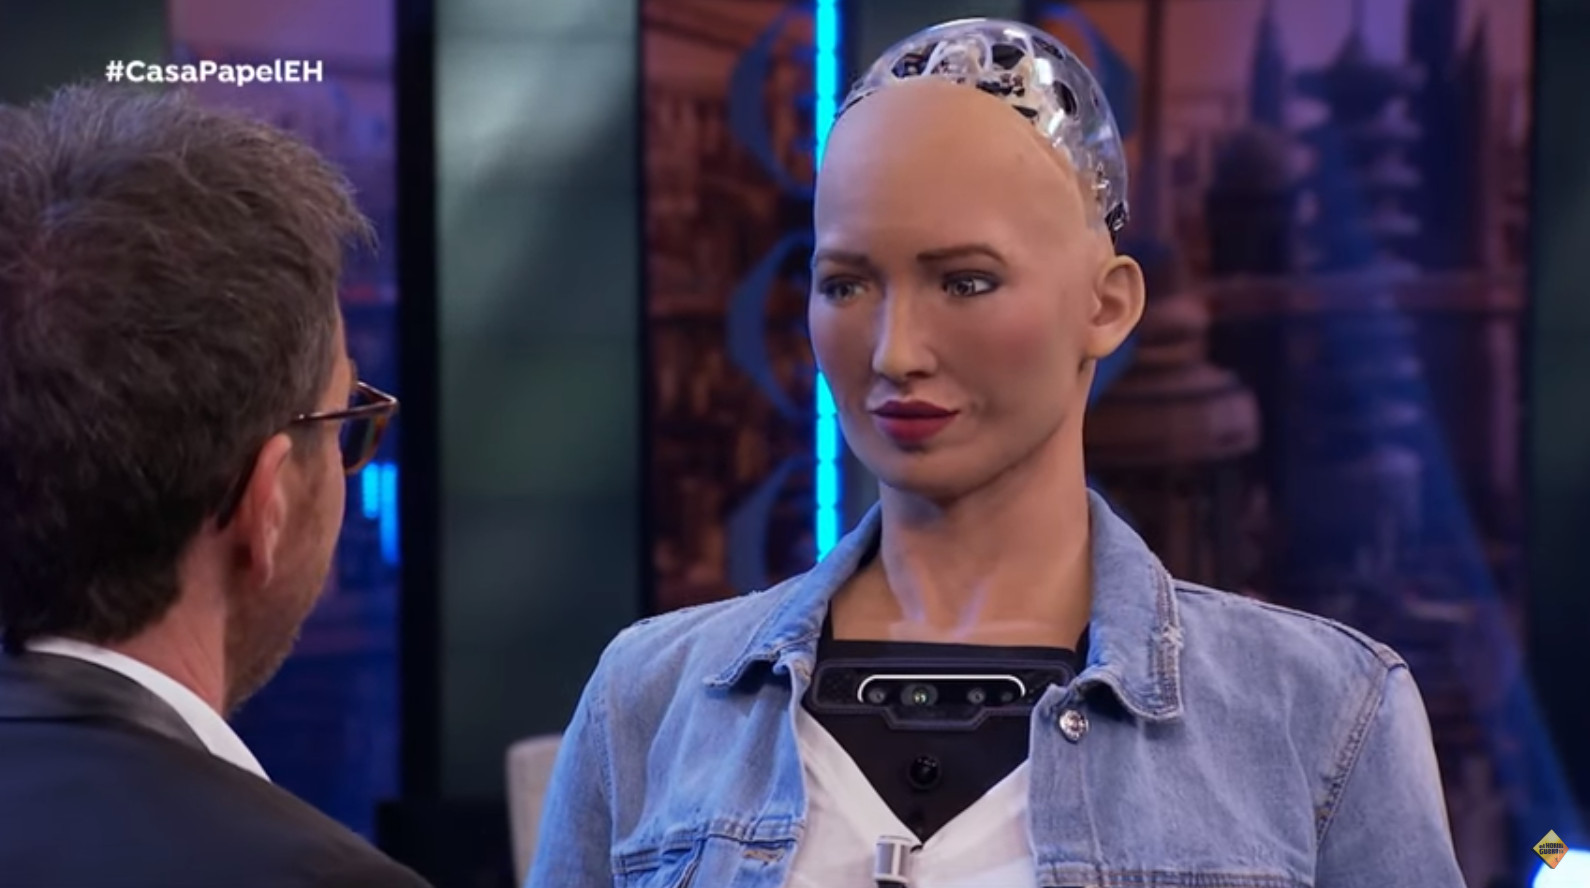 El robot Sophia da una lección a todos los humanos en "El Hormiguero" 1